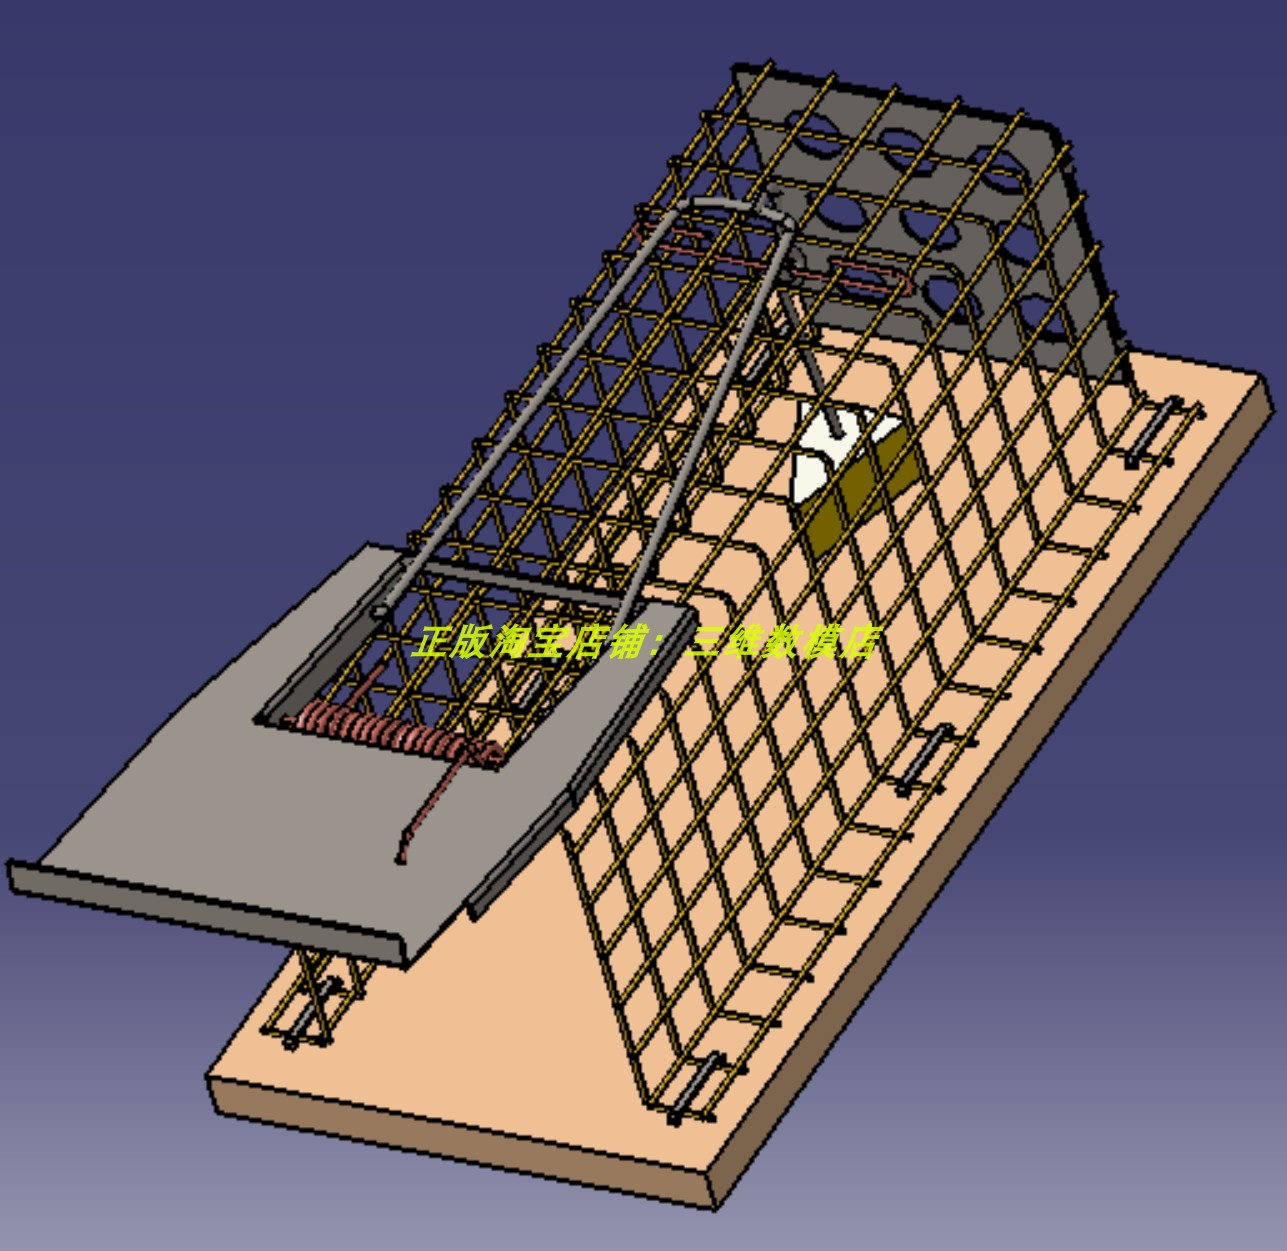 活捉抓老鼠笼陷阱捕鼠器 3D三维模型 几何数模建模 stp诱饵铁笼子